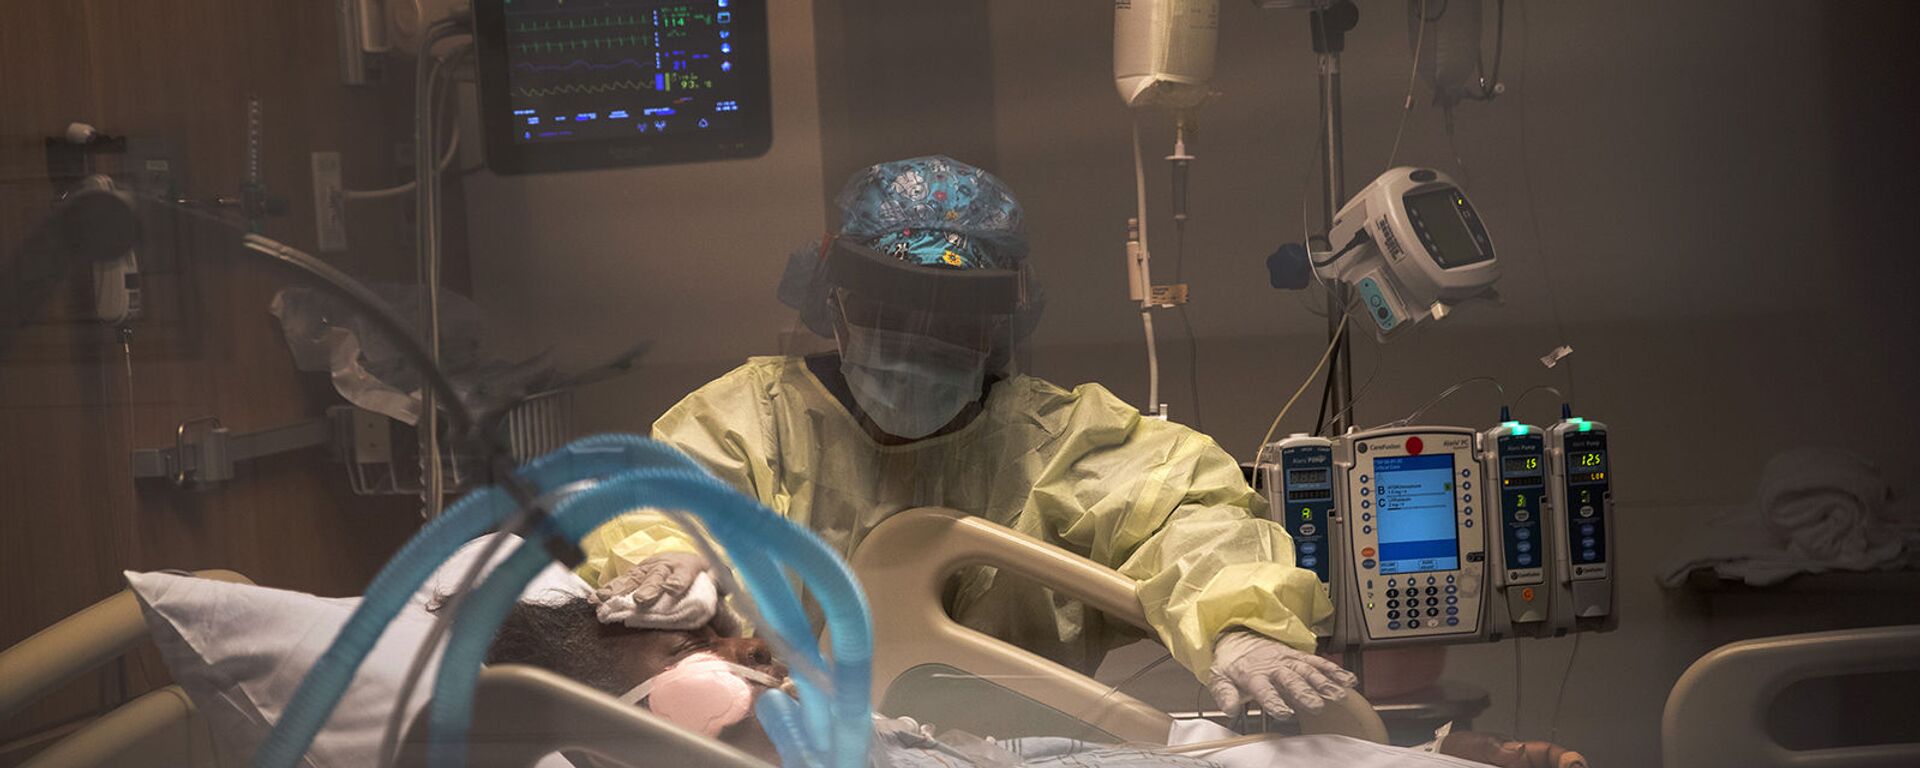 Пациент с COVID-19 на аппарате искусственной вентиляции легких в отделении интенсивной терапии больницы Стэмфорд (27 апреля 2020). Стэмфорд, штат Коннектикут - Sputnik Армения, 1920, 04.06.2021